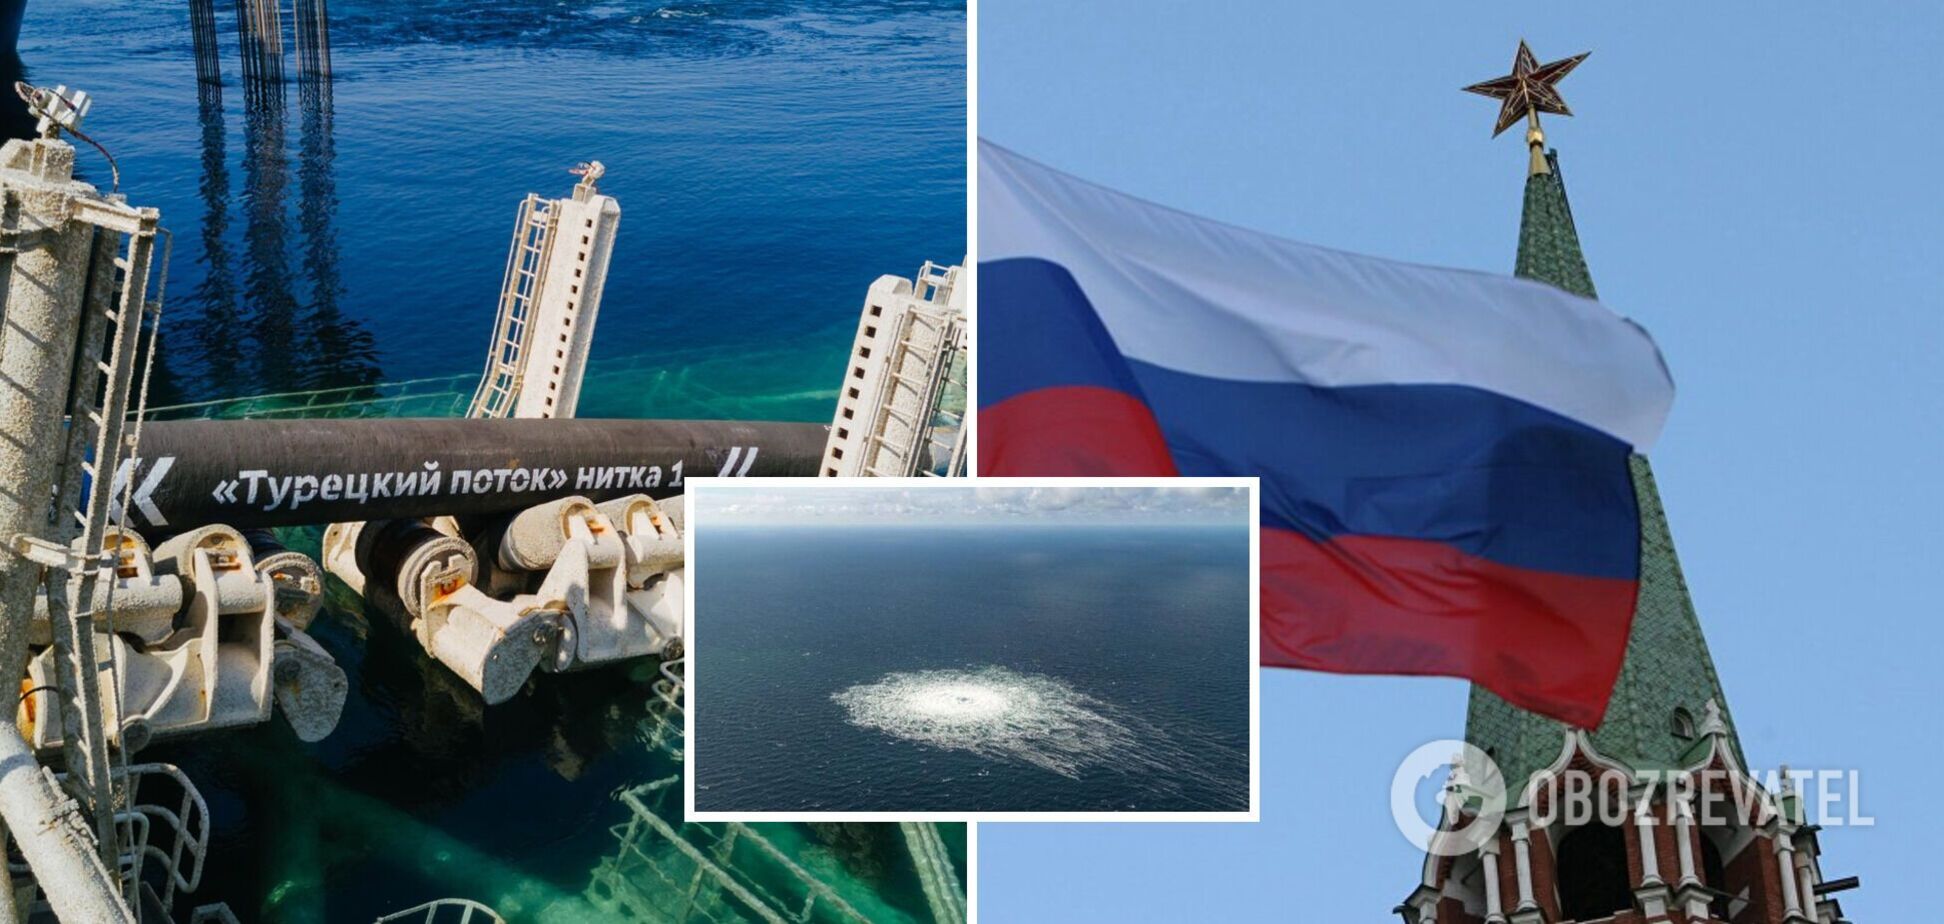 Росія готує підґрунтя для підривів на газопроводах 'Турецький потік' і 'Блакитний потік': що на це вказує